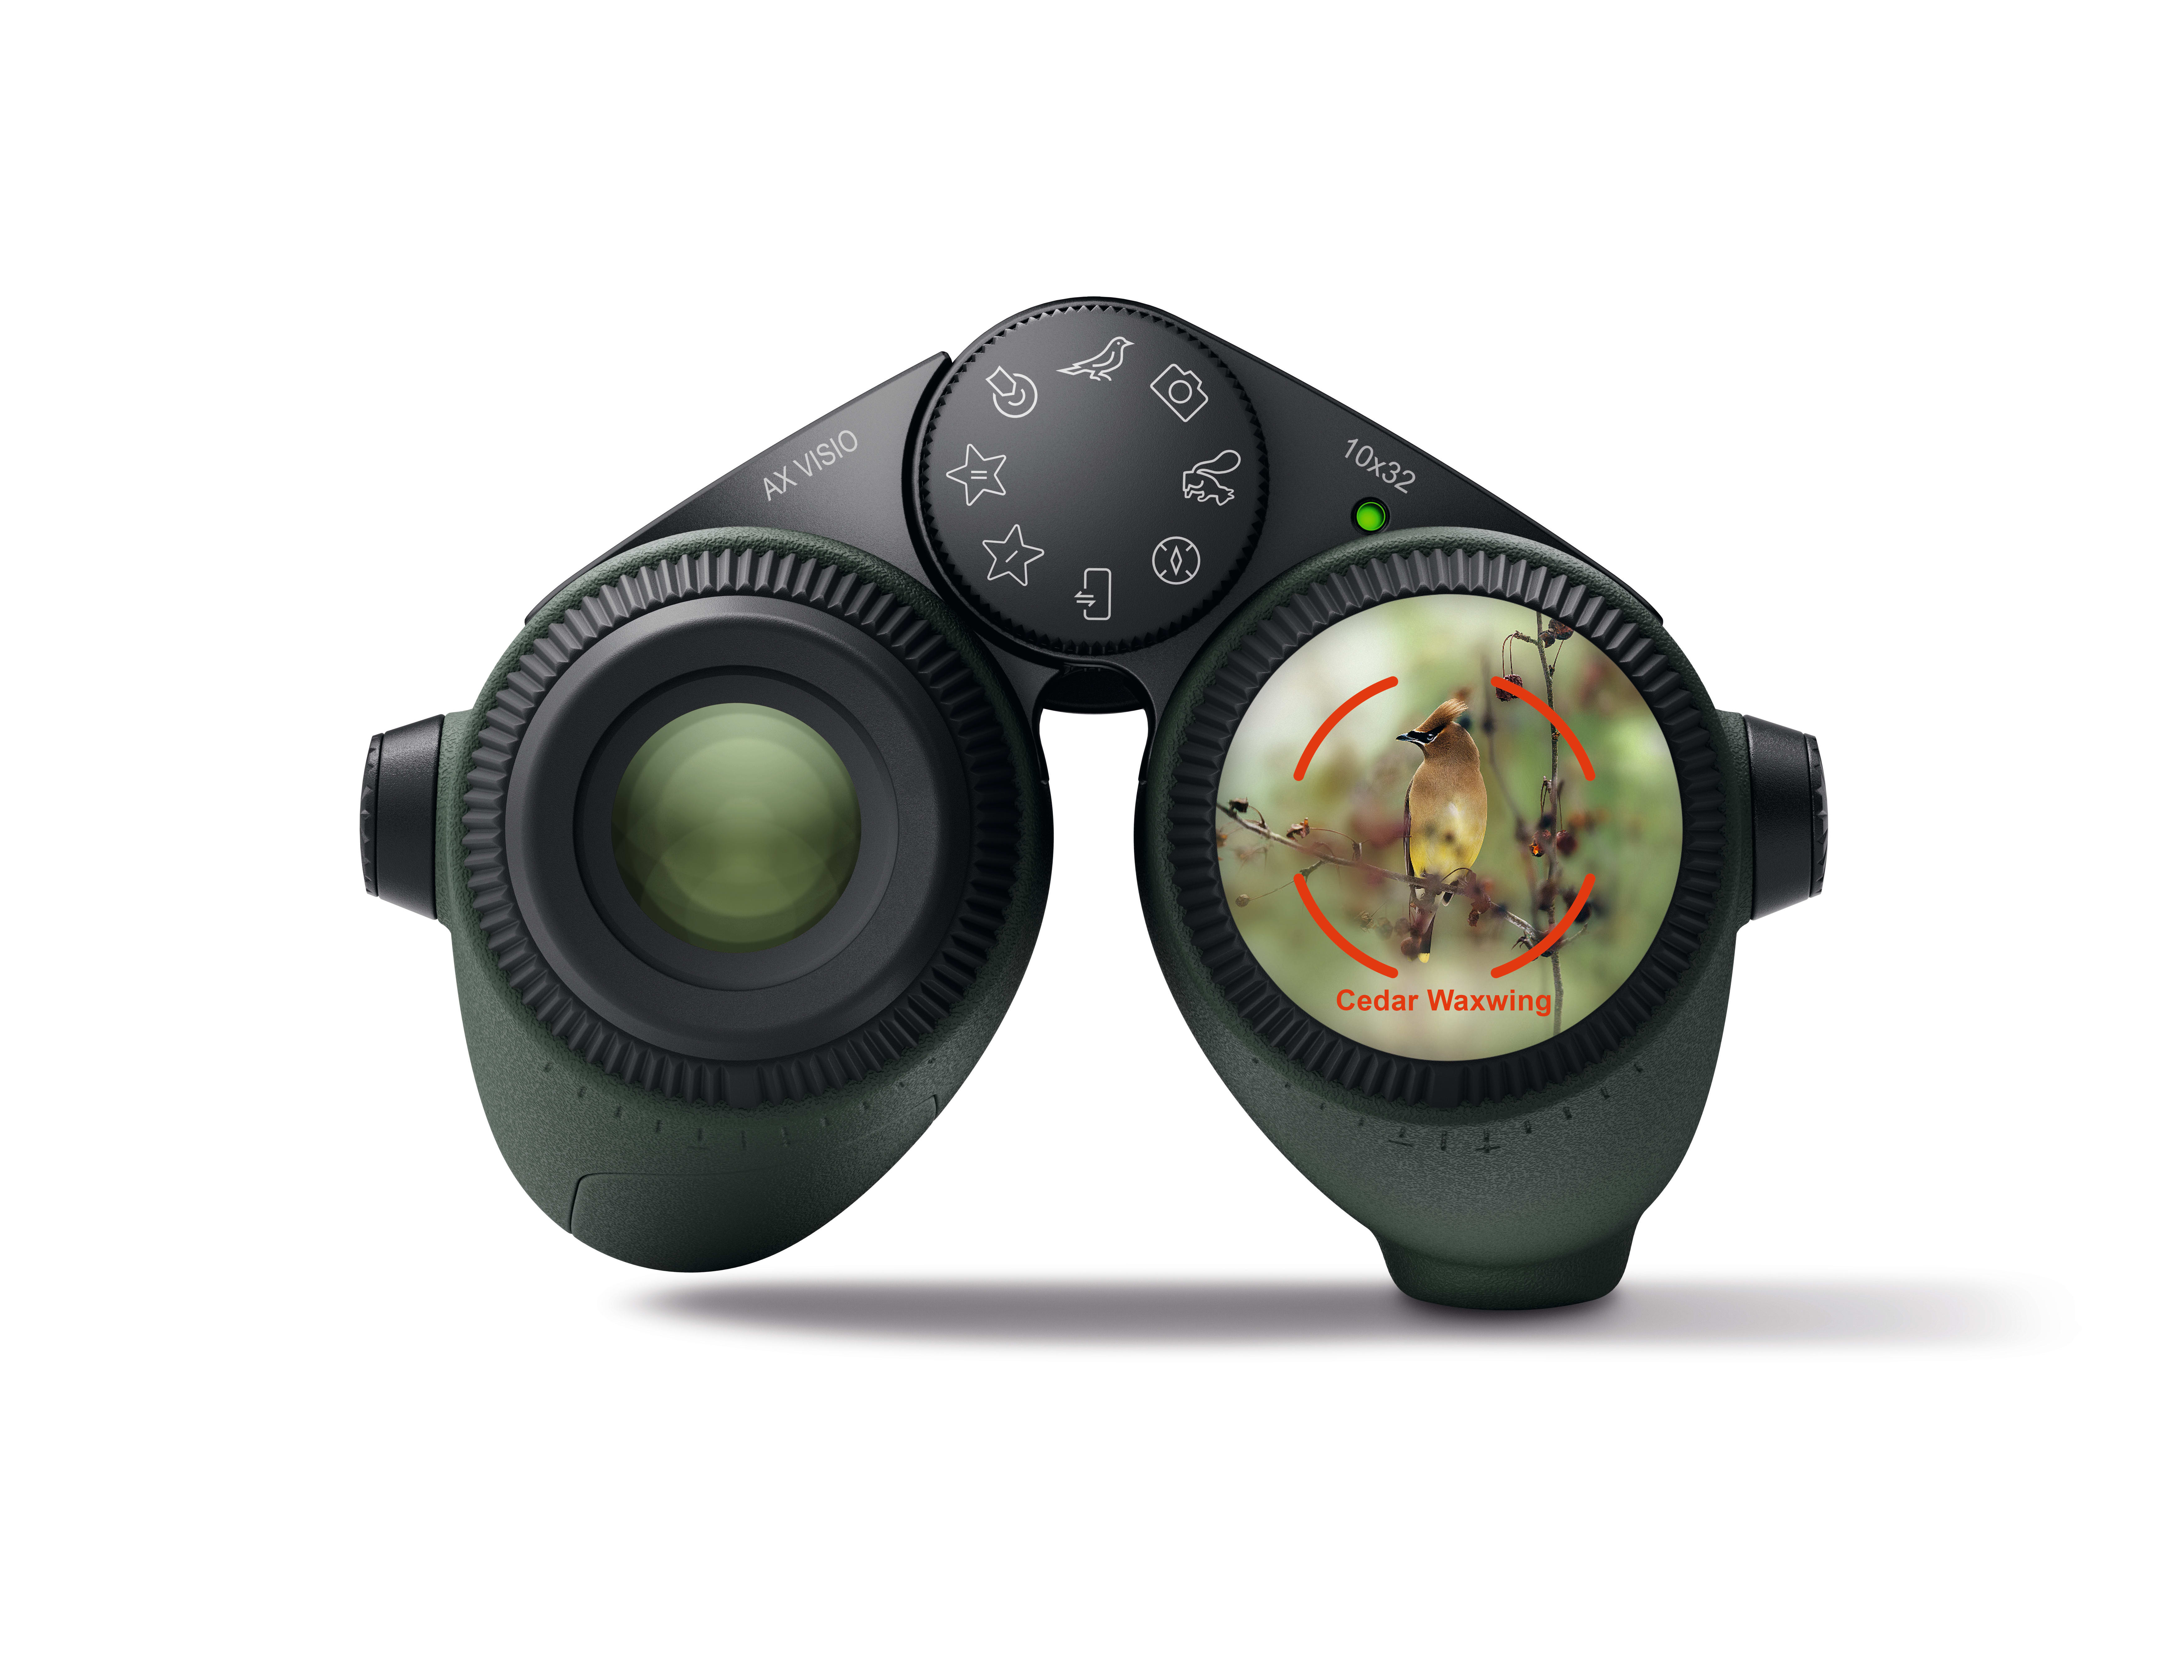 The Swarovski Visio smart binocular